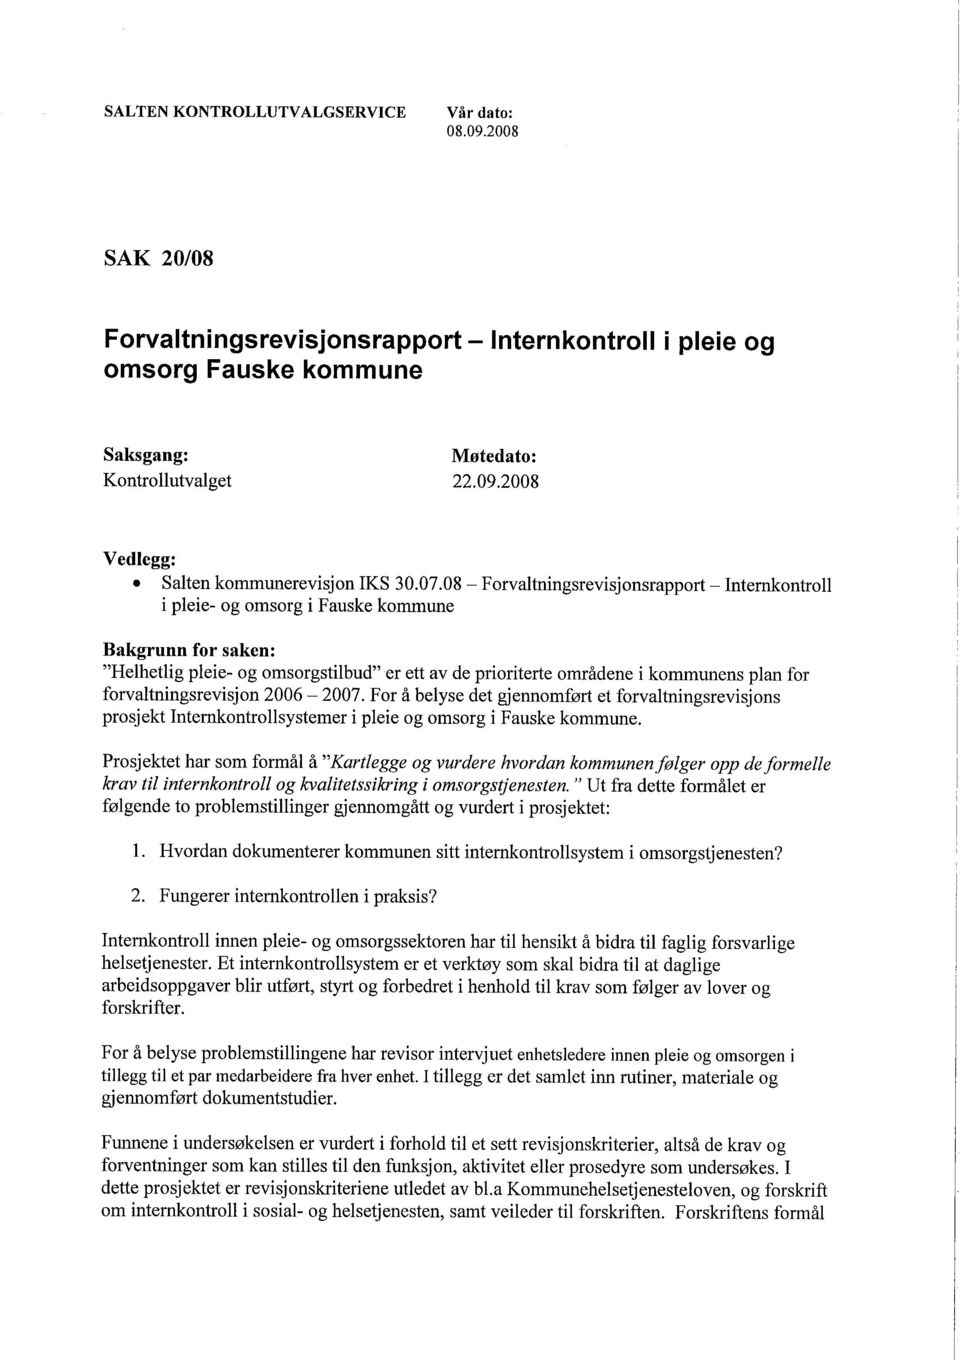 forvaltningsrevisjon 2006-2007. For å belyse det gjennomført et forvaltningsrevisjons prosjekt Internontrollsystemer i pleie og omsorg i Fauske kommune.